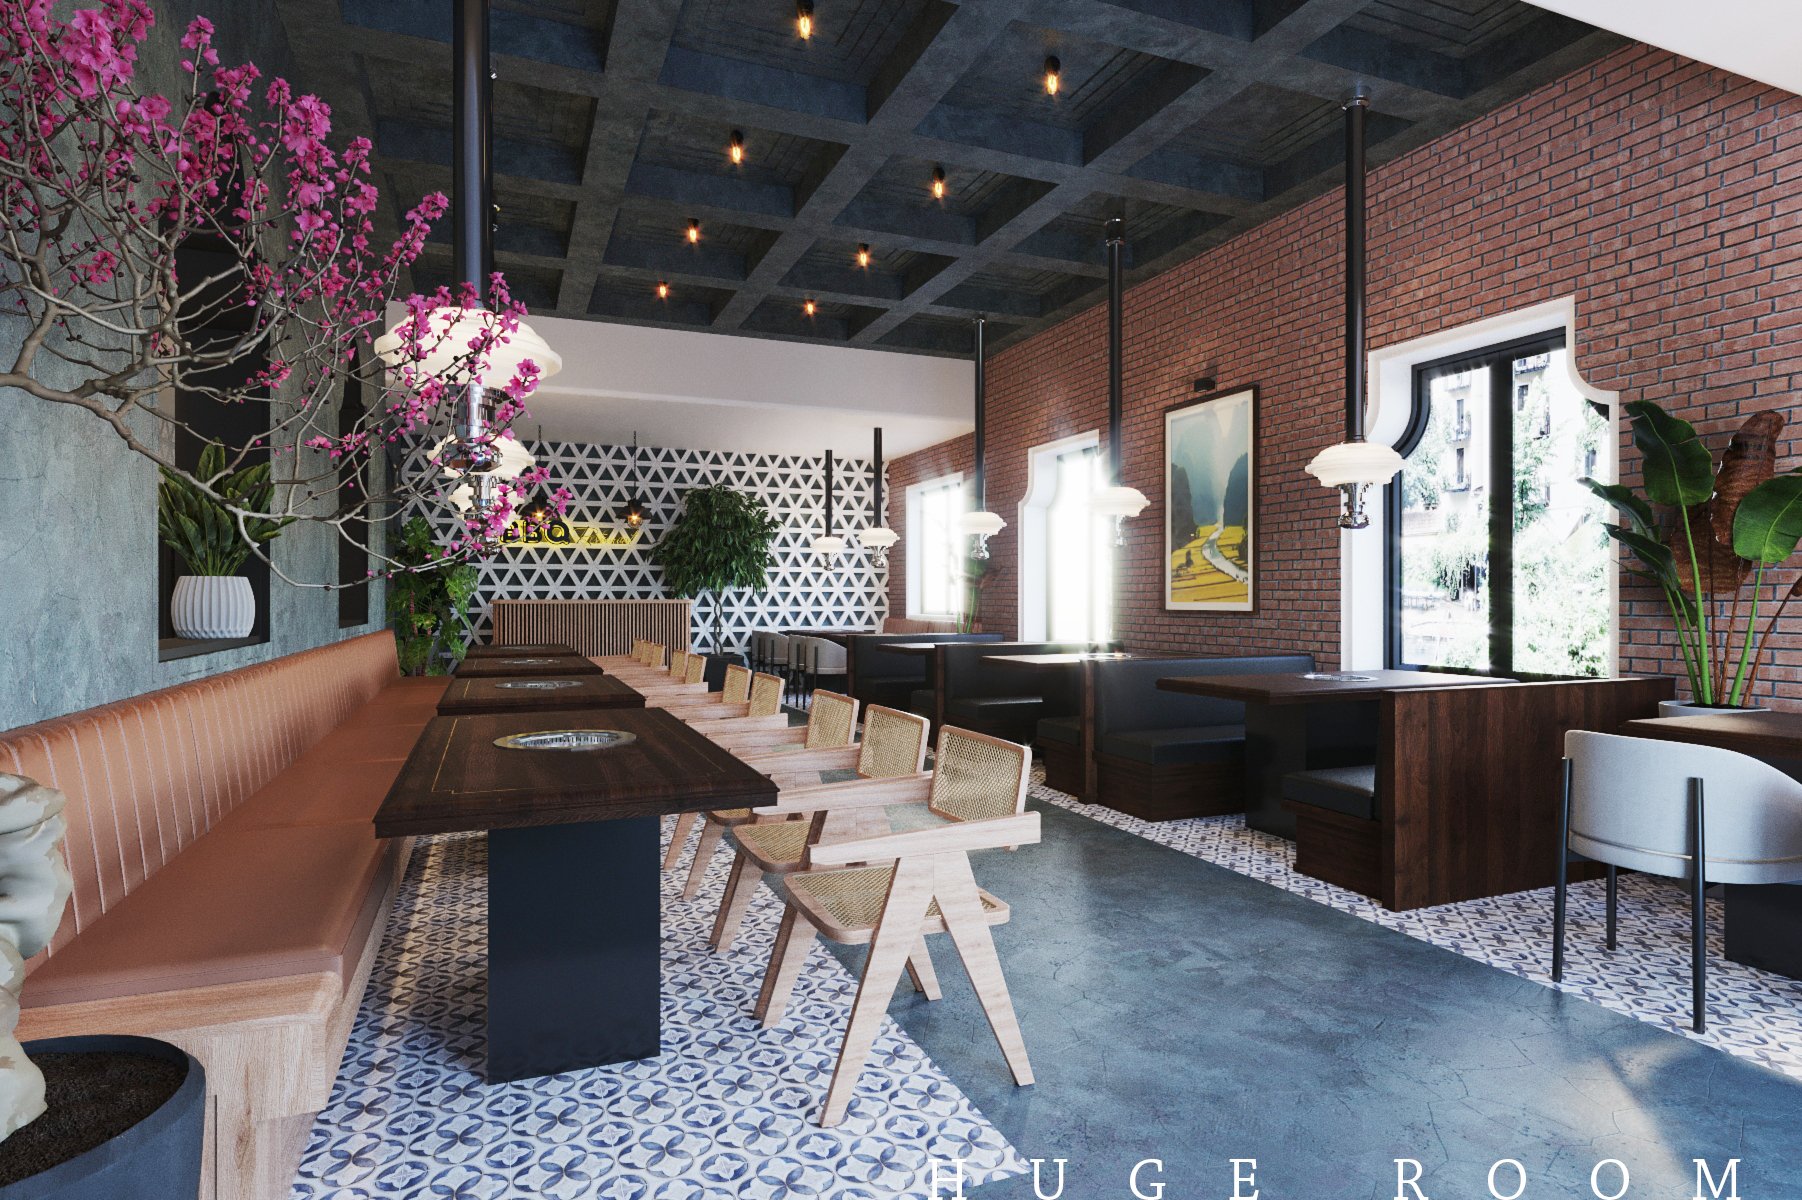 Thiết kế nhà hàng tại Ninh Bình sẽ chuyên nghiệp và tối ưu hóa không gian để tạo ra trải nghiệm ẩm thực tuyệt vời. Hãy để chúng tôi giúp bạn tạo ra một không gian ấm cúng, đẹp mắt và chất lượng để đáp ứng sự mong đợi của khách hàng.